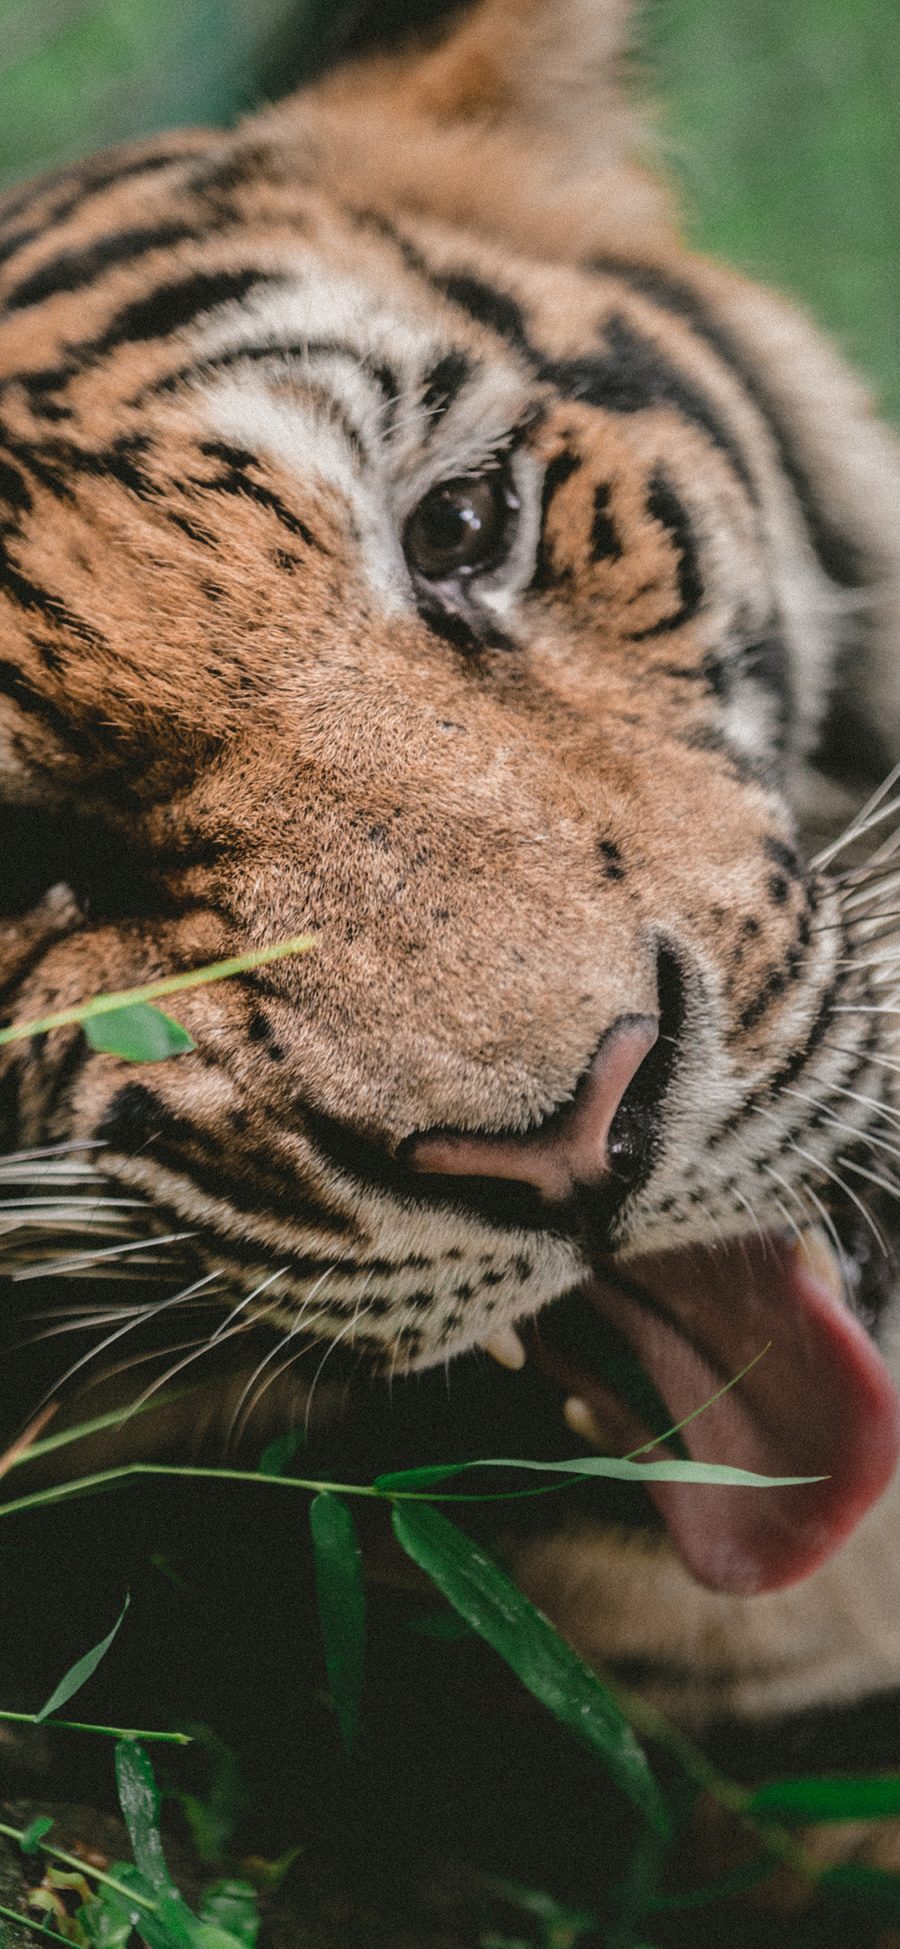 [2436×1125]老虎 动物 凶猛动物 林中之王 苹果手机壁纸图片